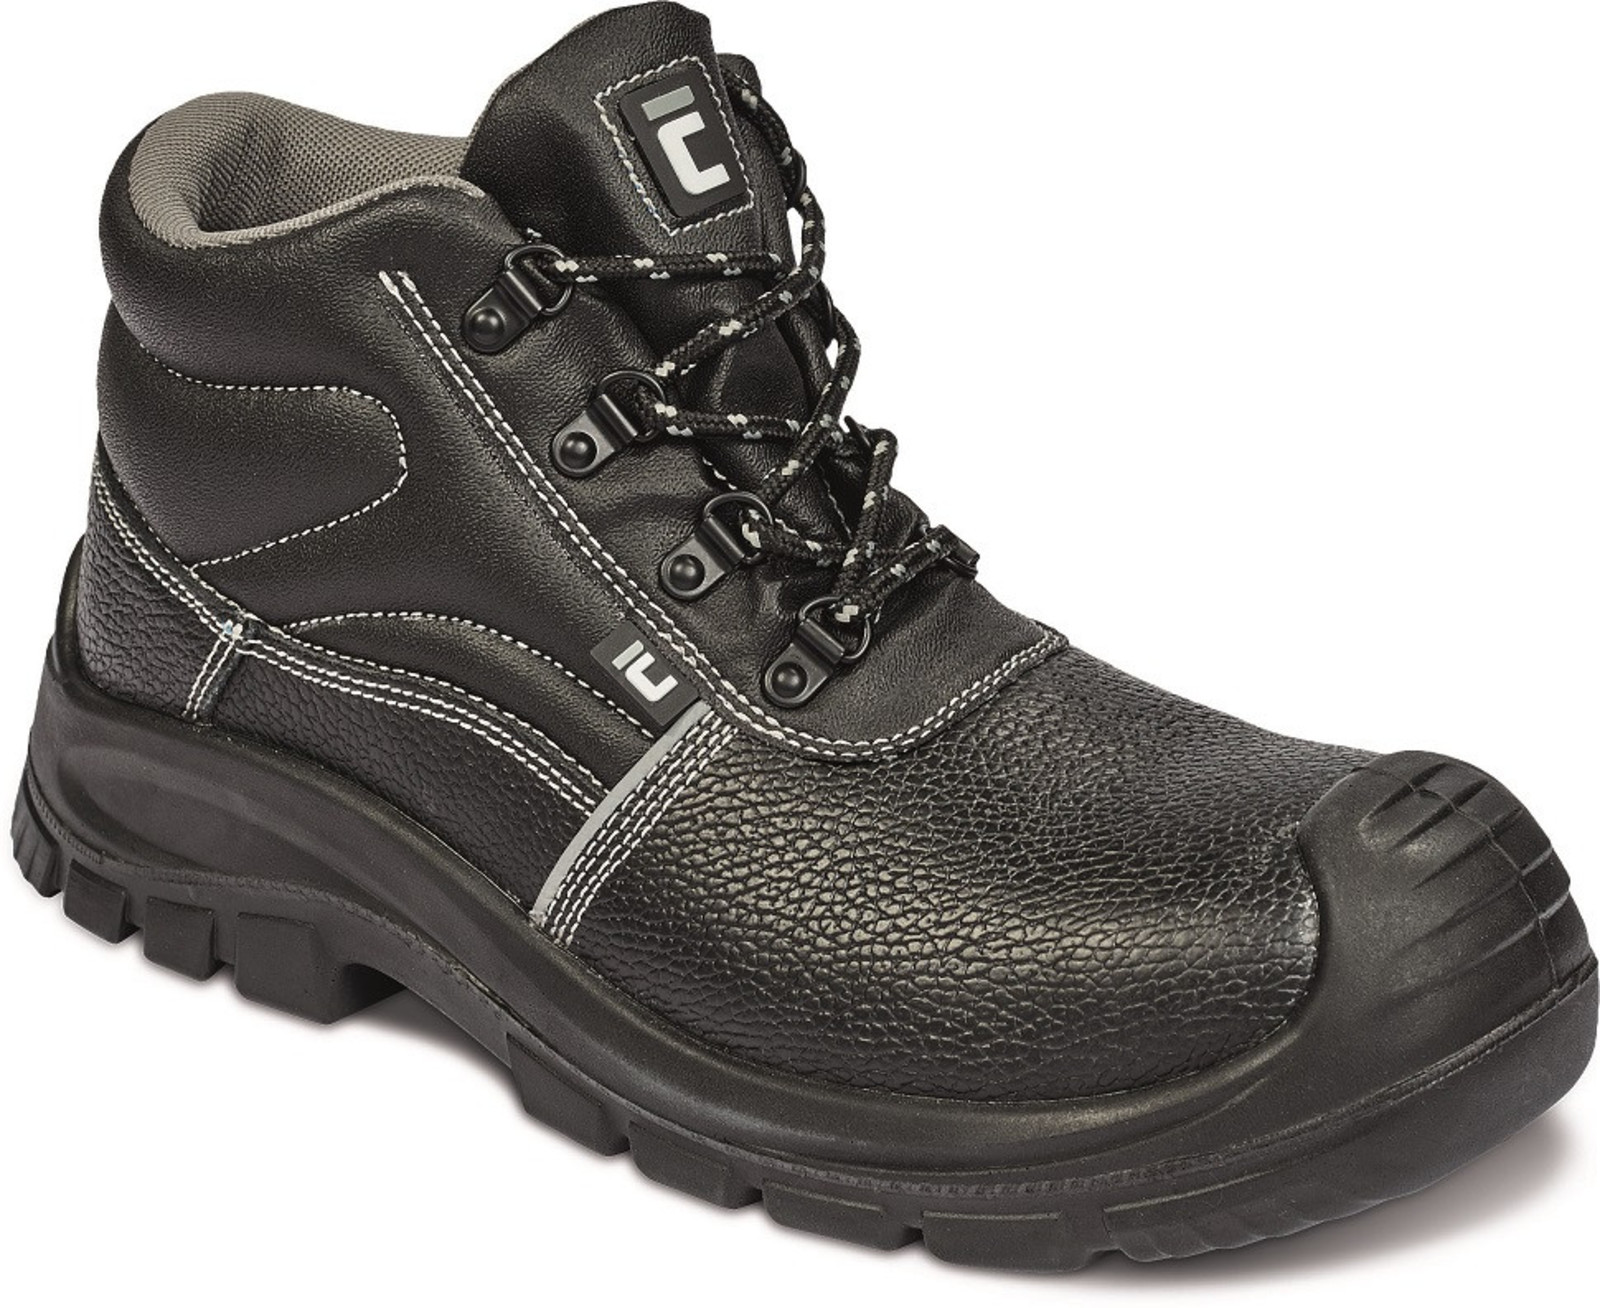 Bezpečnostná obuv Raven XT S3 Metal Free - veľkosť: 42, farba: čierna